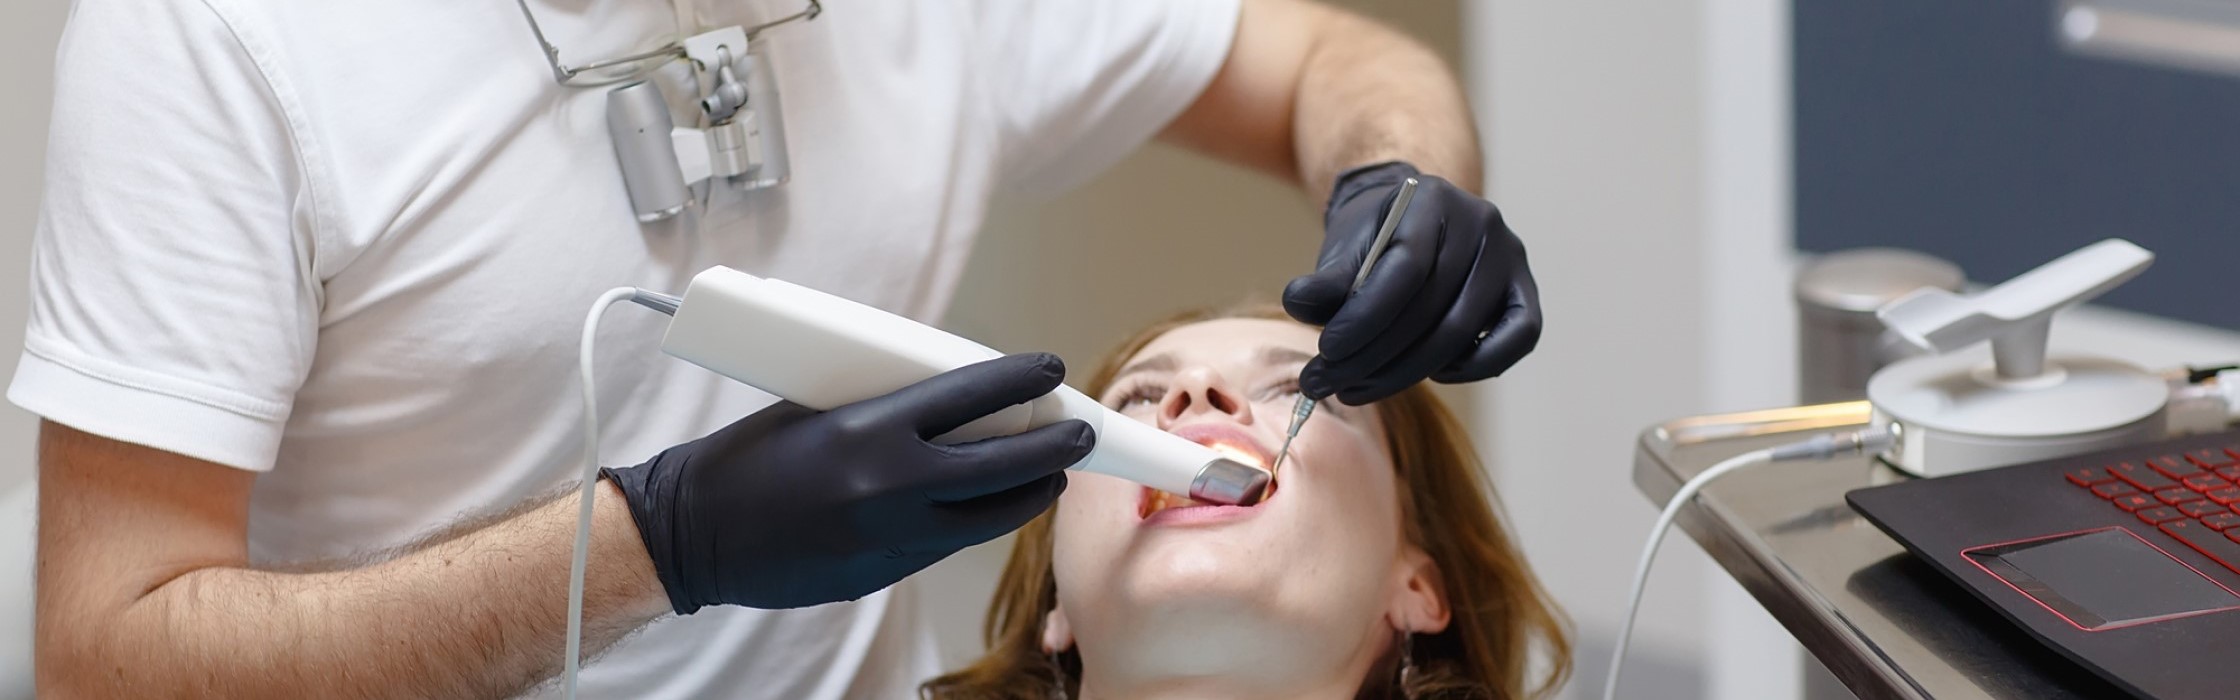 Intraoralscanner: Digitale Abformung beim Zahnarzt